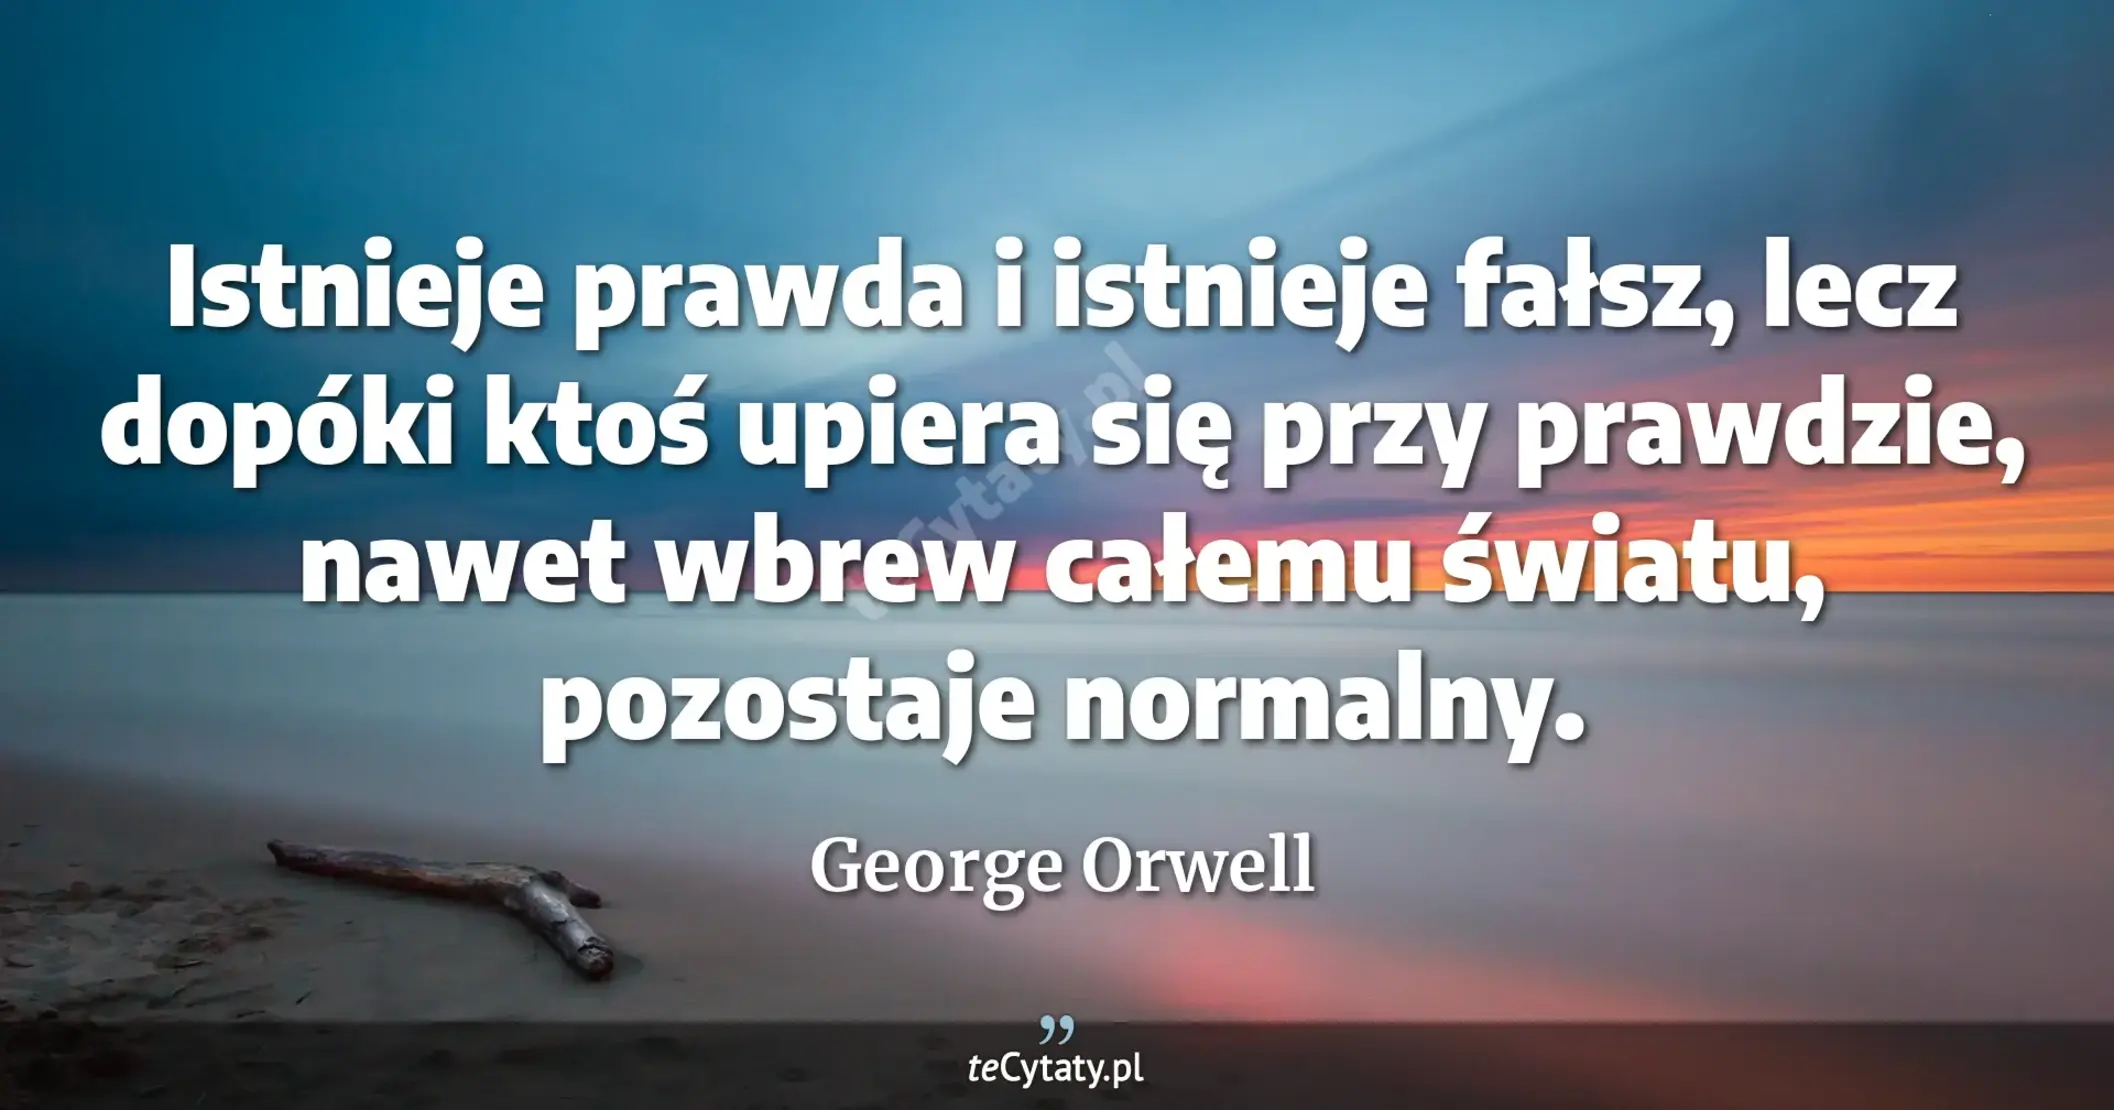 Istnieje prawda i istnieje fałsz, lecz dopóki ktoś upiera się przy prawdzie, nawet wbrew całemu światu, pozostaje normalny. - George Orwell